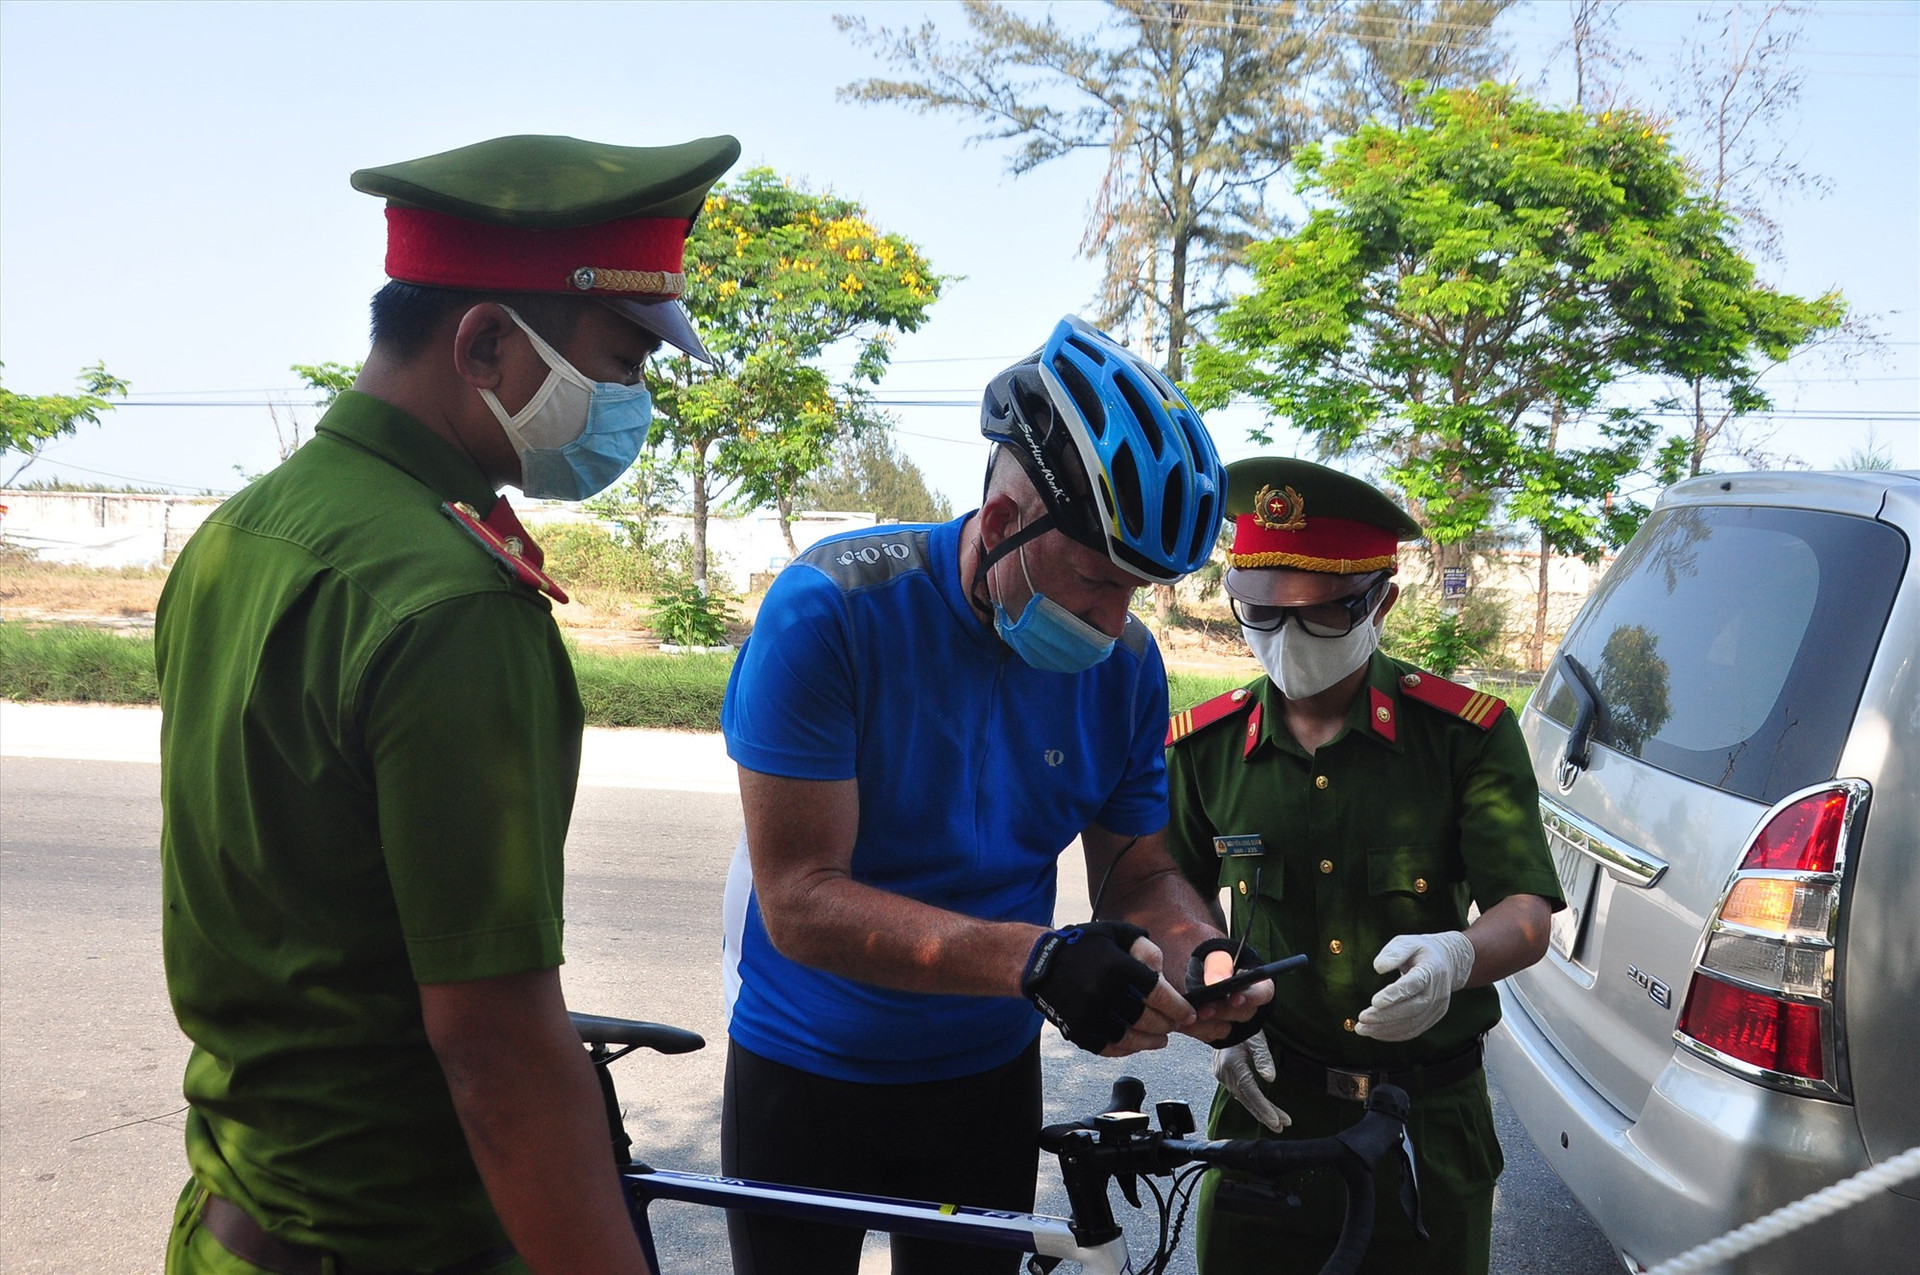 Tại chốt kiểm soát phía bắc trên đường ĐT603B, lực lượng làm nhiệm vụ đang kiểm tra một người ngoại quốc lưu thông bằng xe đạp từ hướng Đà Nẵng vào Hội An. Ảnh: V.A